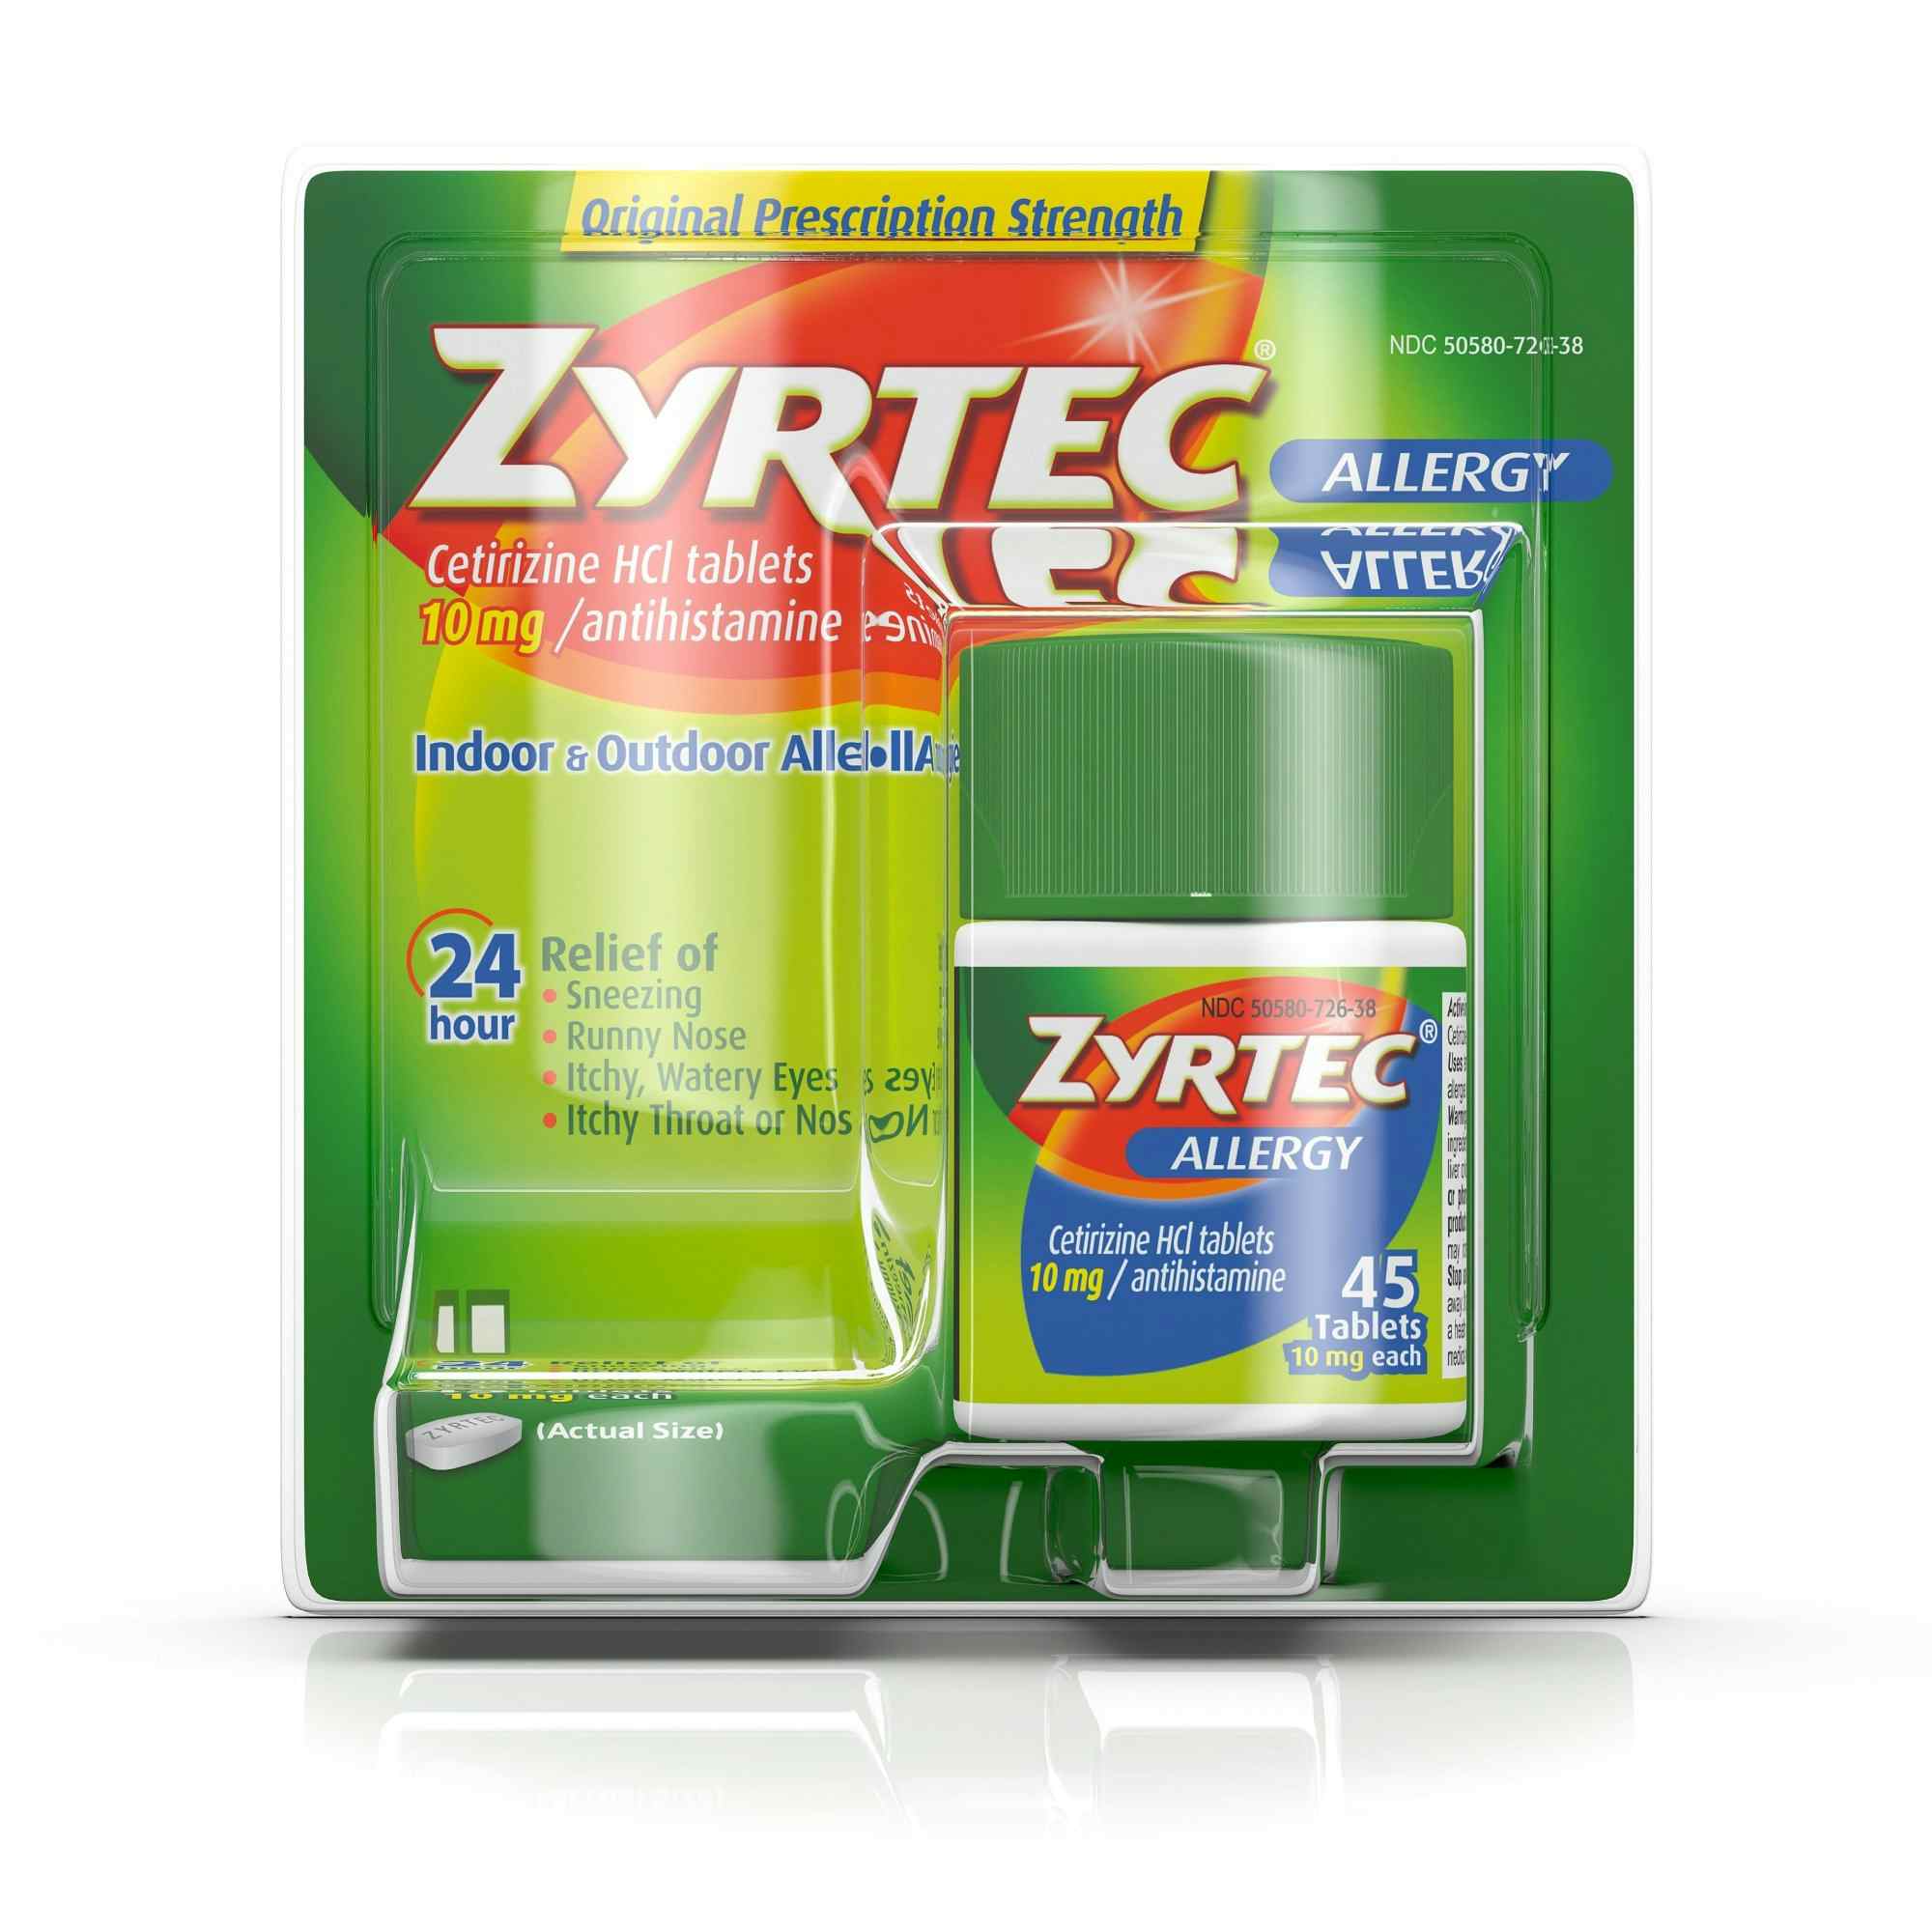 Zyrtec Indoor & Outdoor Allergy Relief, 10 mg, 30312547204386, 45 Tablets - 1 Bottle